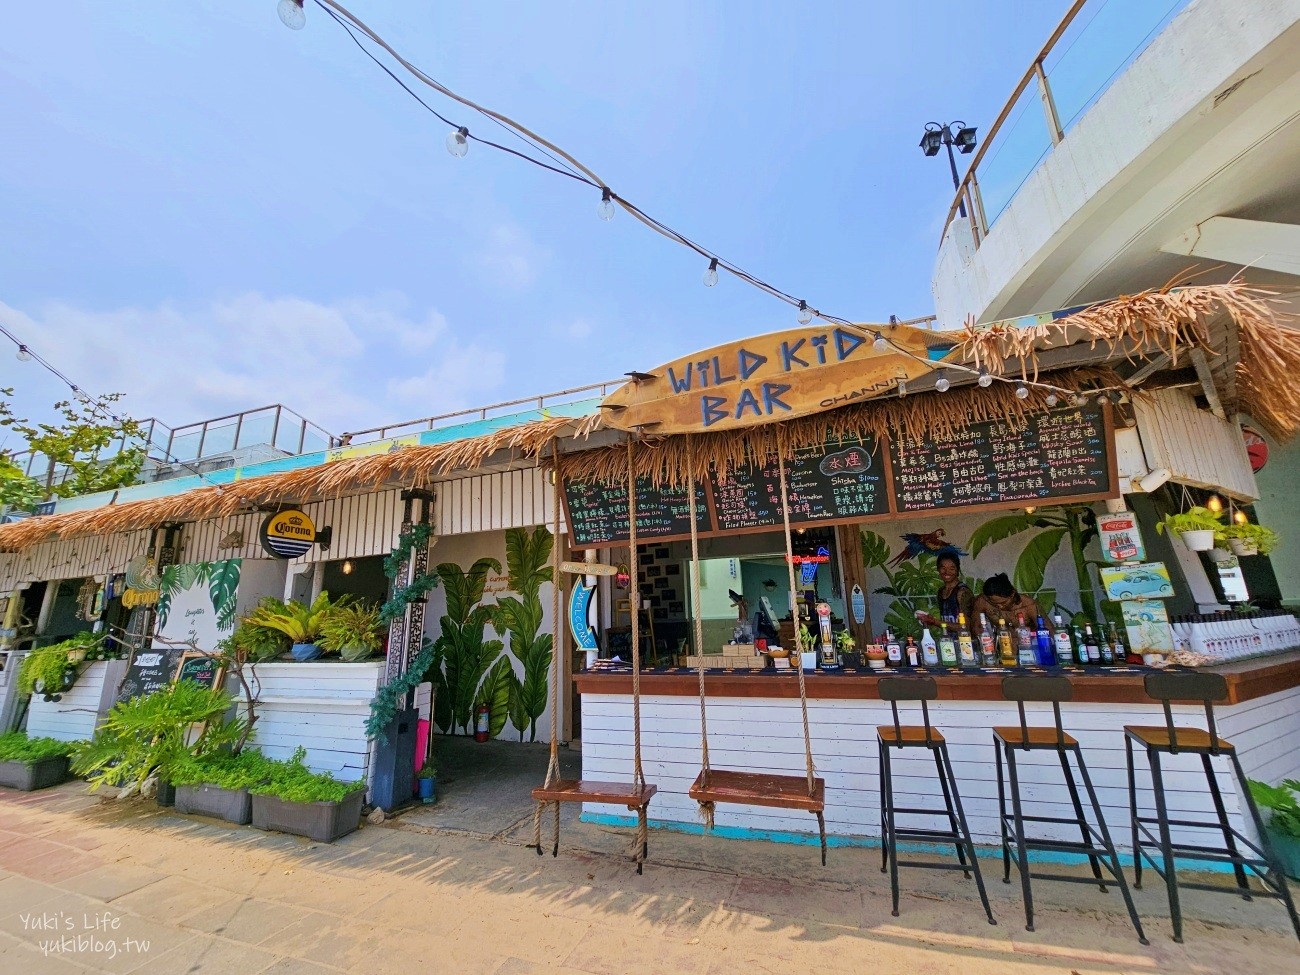 墾丁南灣野海子 WILD KID BAR，海景第一排景觀餐廳咖啡酒吧、峇里島風盪鞦韆氣氛滿分！ - yukiblog.tw